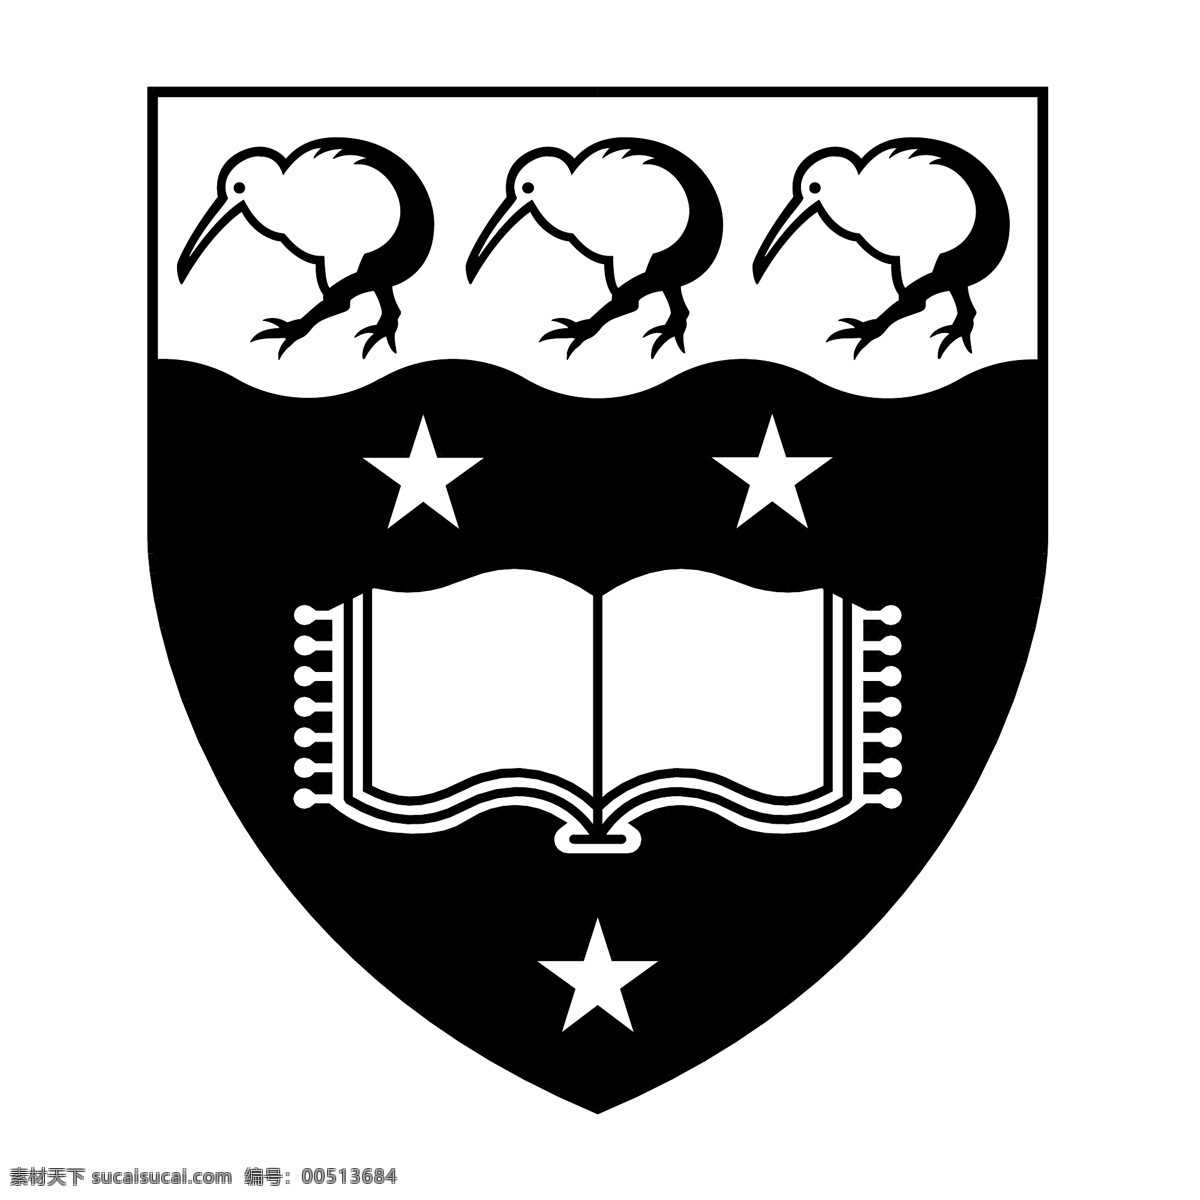 奥克兰 大学 标志 标识为免费 psd源文件 logo设计